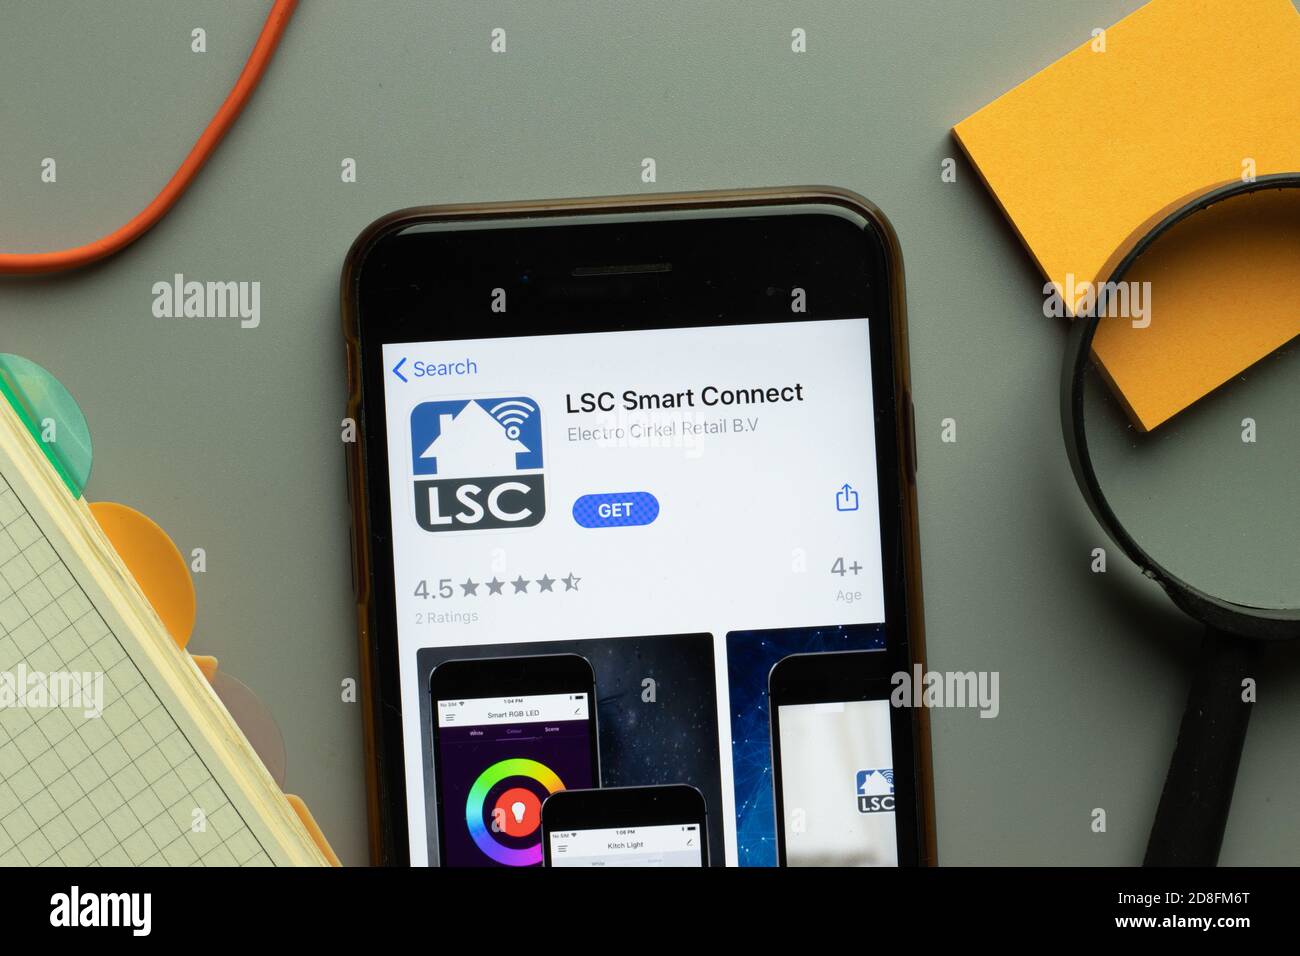 LSC Smart Connect logo